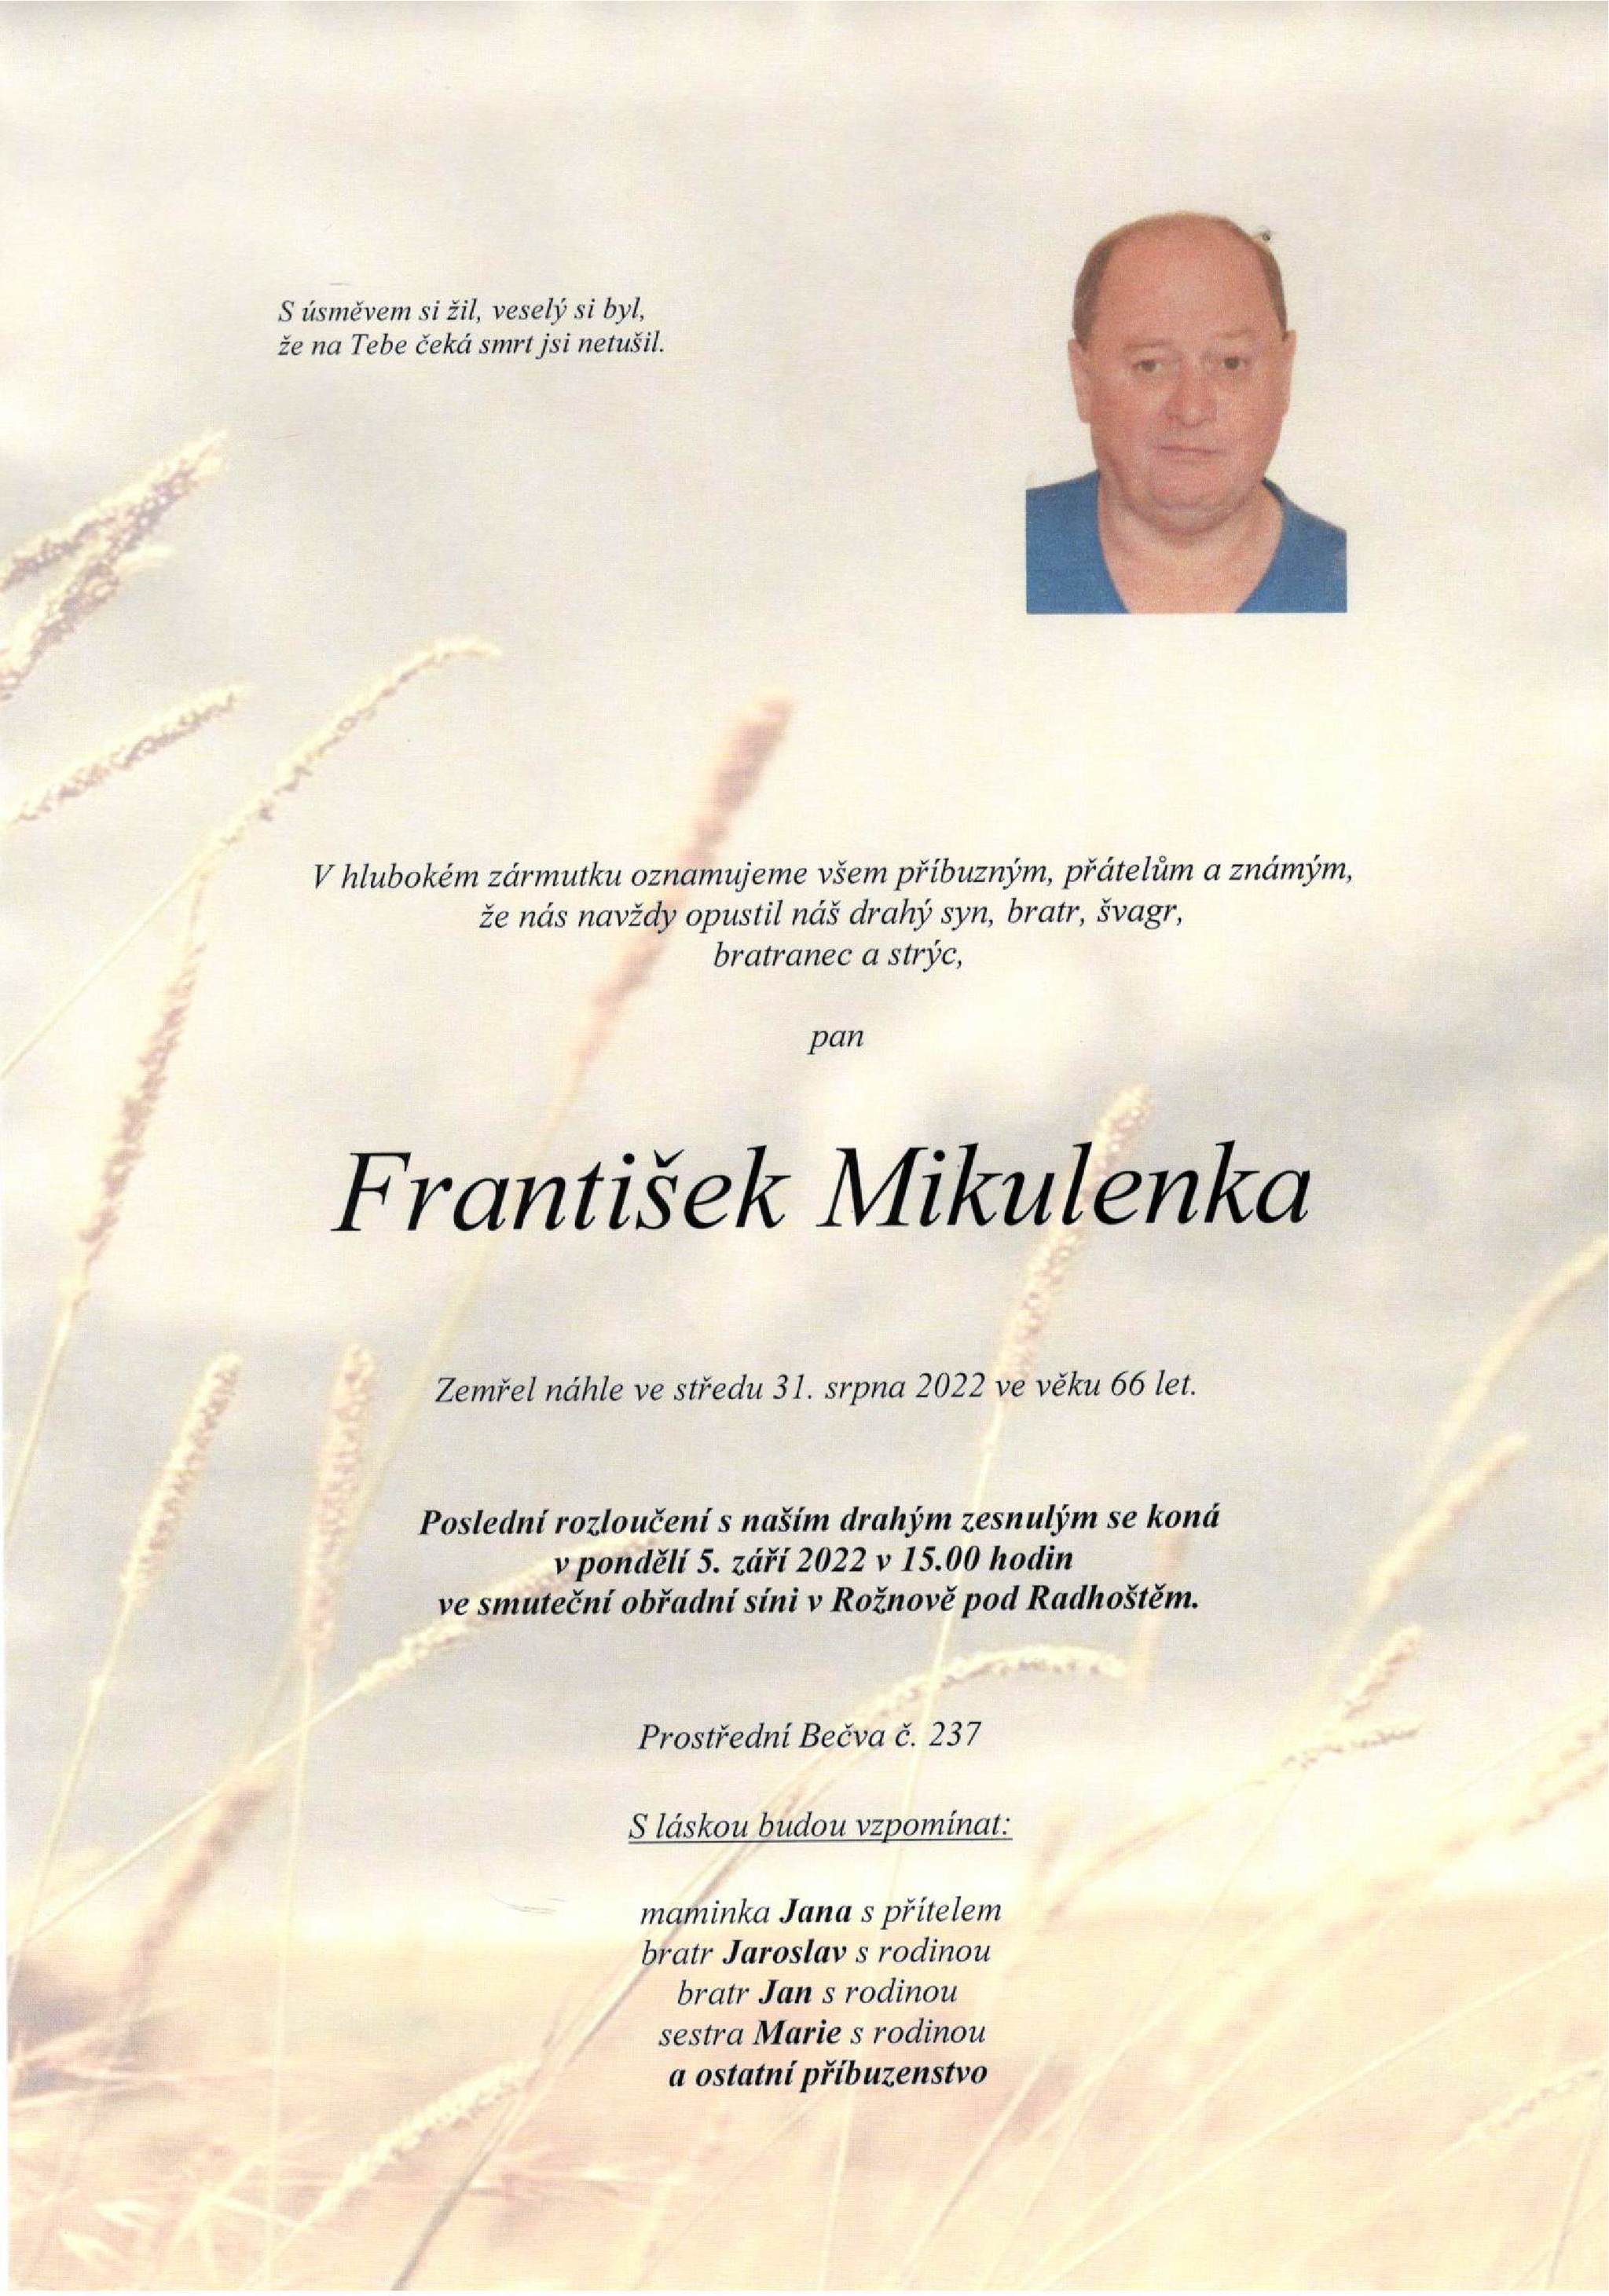 František Mikulenka